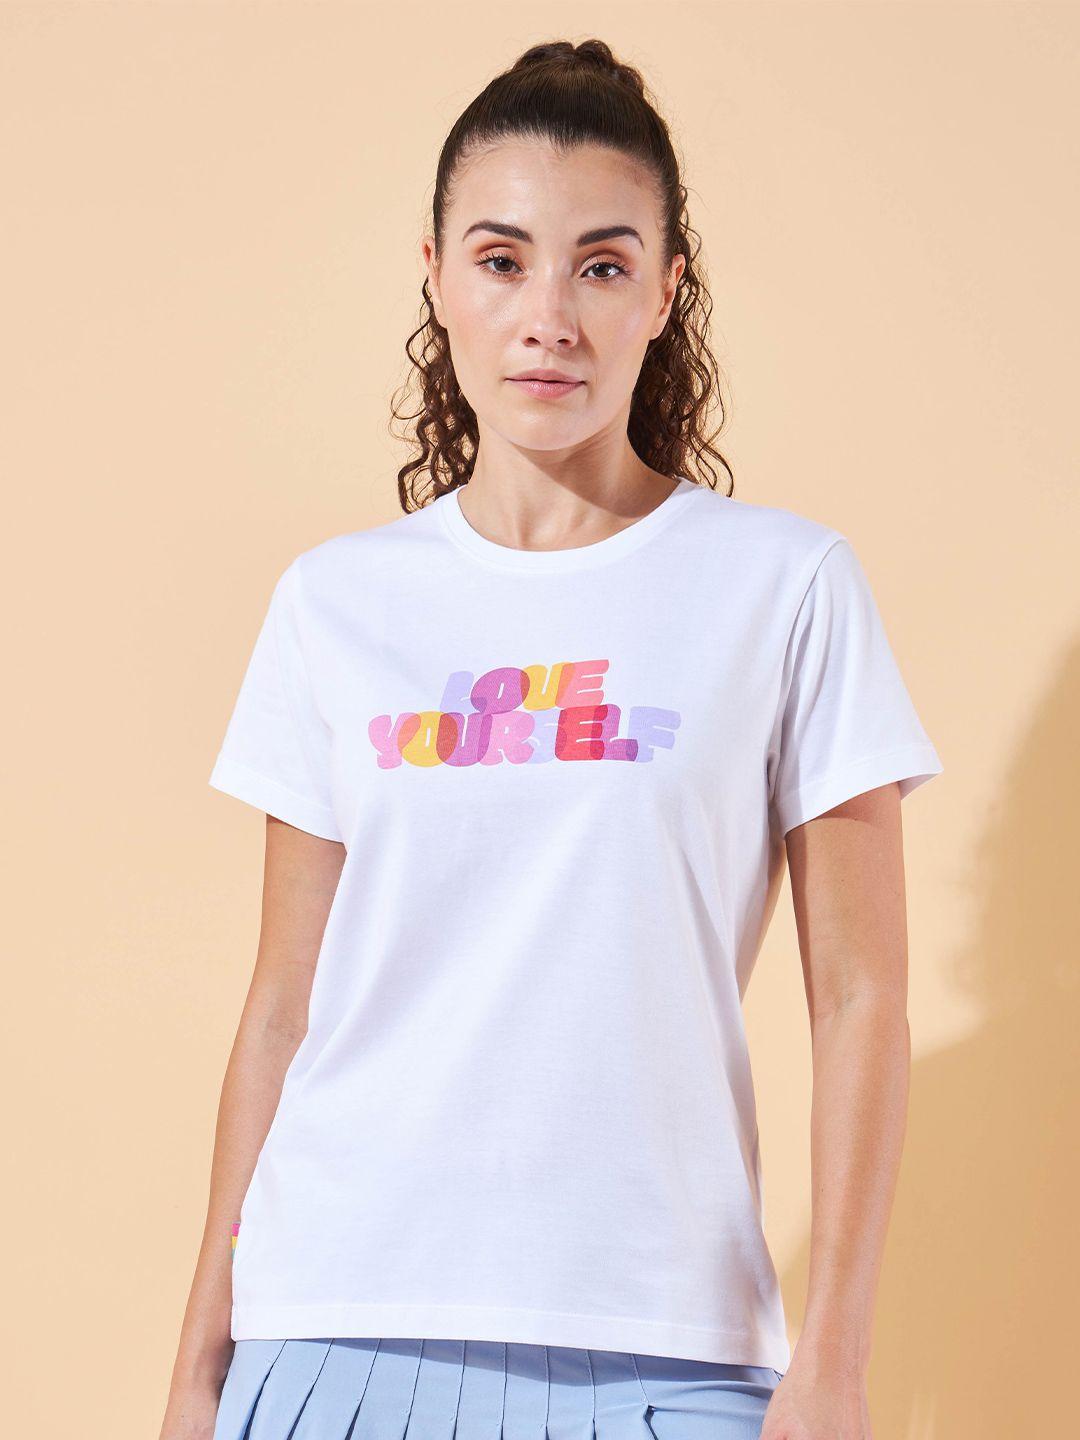 cultsport lifestyle women typogrphy print round neck cotton sports t-shirt